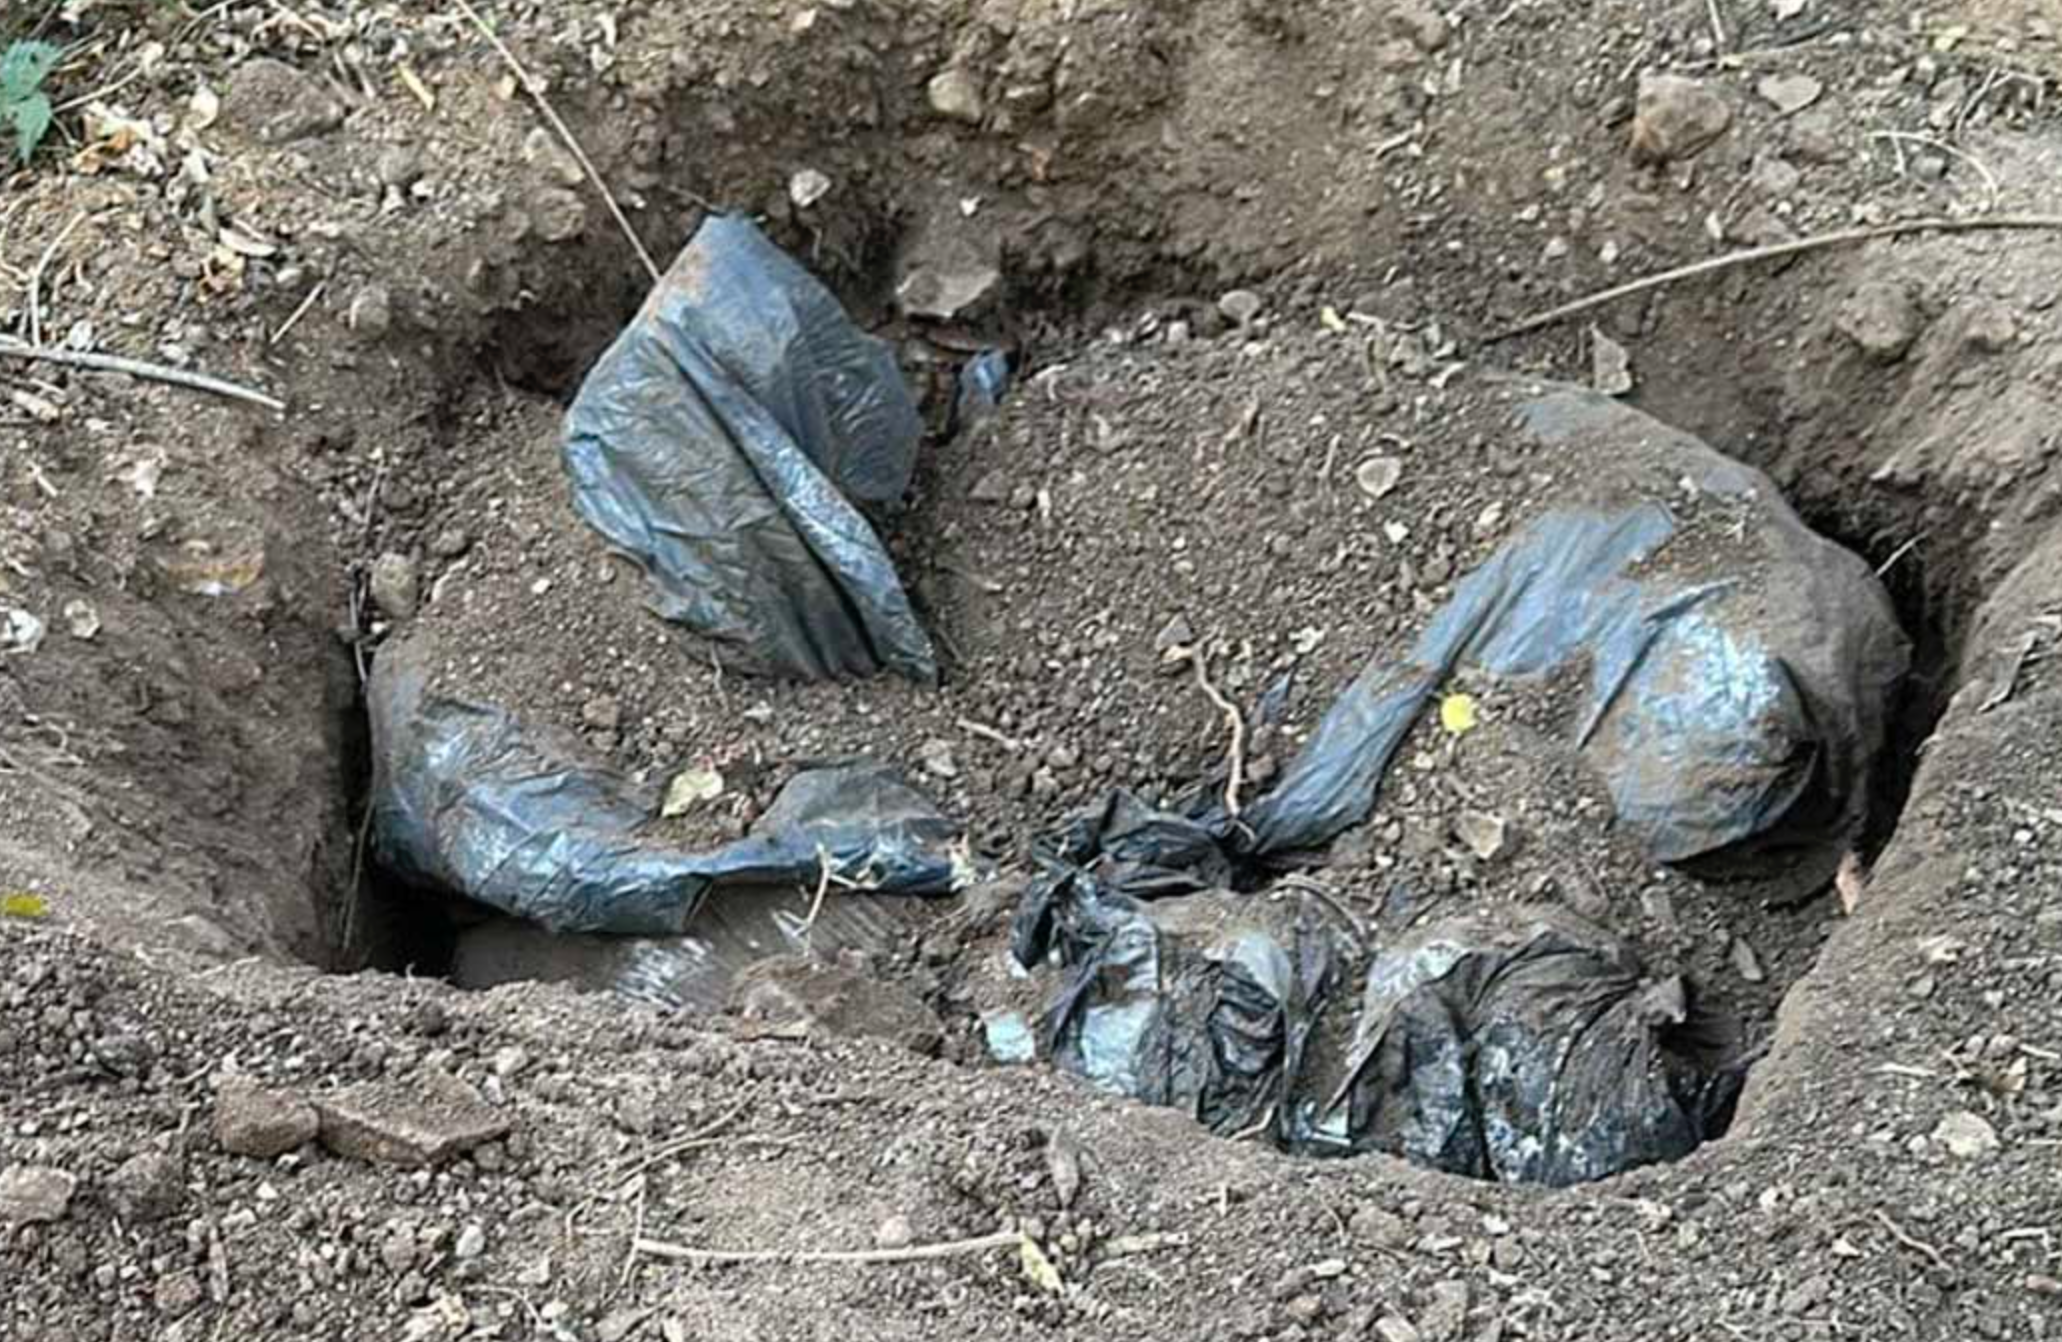 Encuentran fosas clandestinas con restos humanos en El Salto, Jalisco